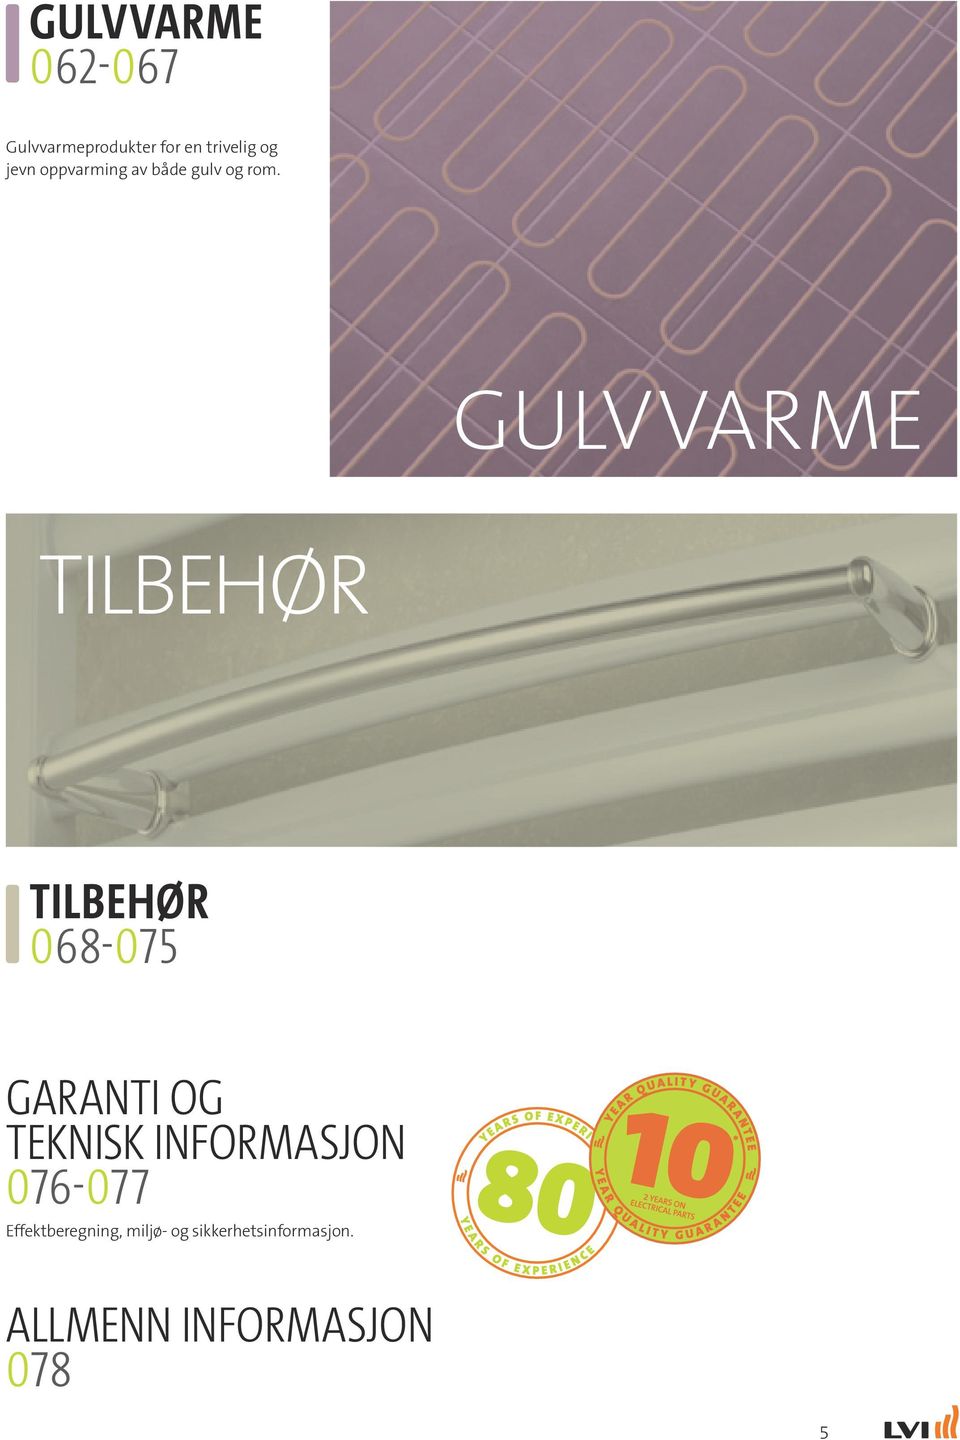 GULVVARME TILBEHØR TILBEHØR 068-075 GARANTI OG TEKNISK